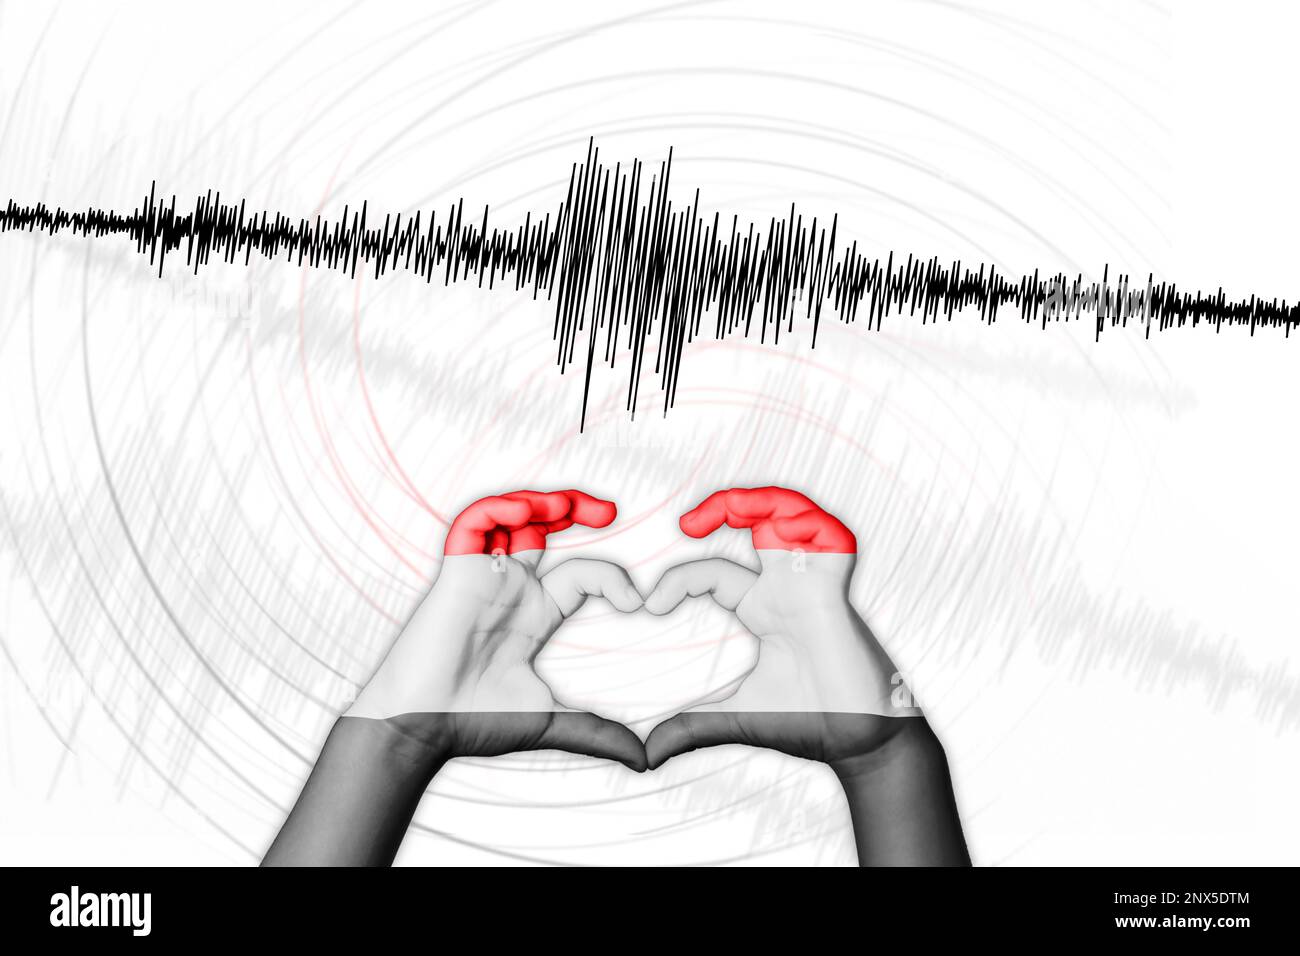 Seismische Aktivität Erdbeben Jemen Symbol der Heart Richter Scale Stockfoto